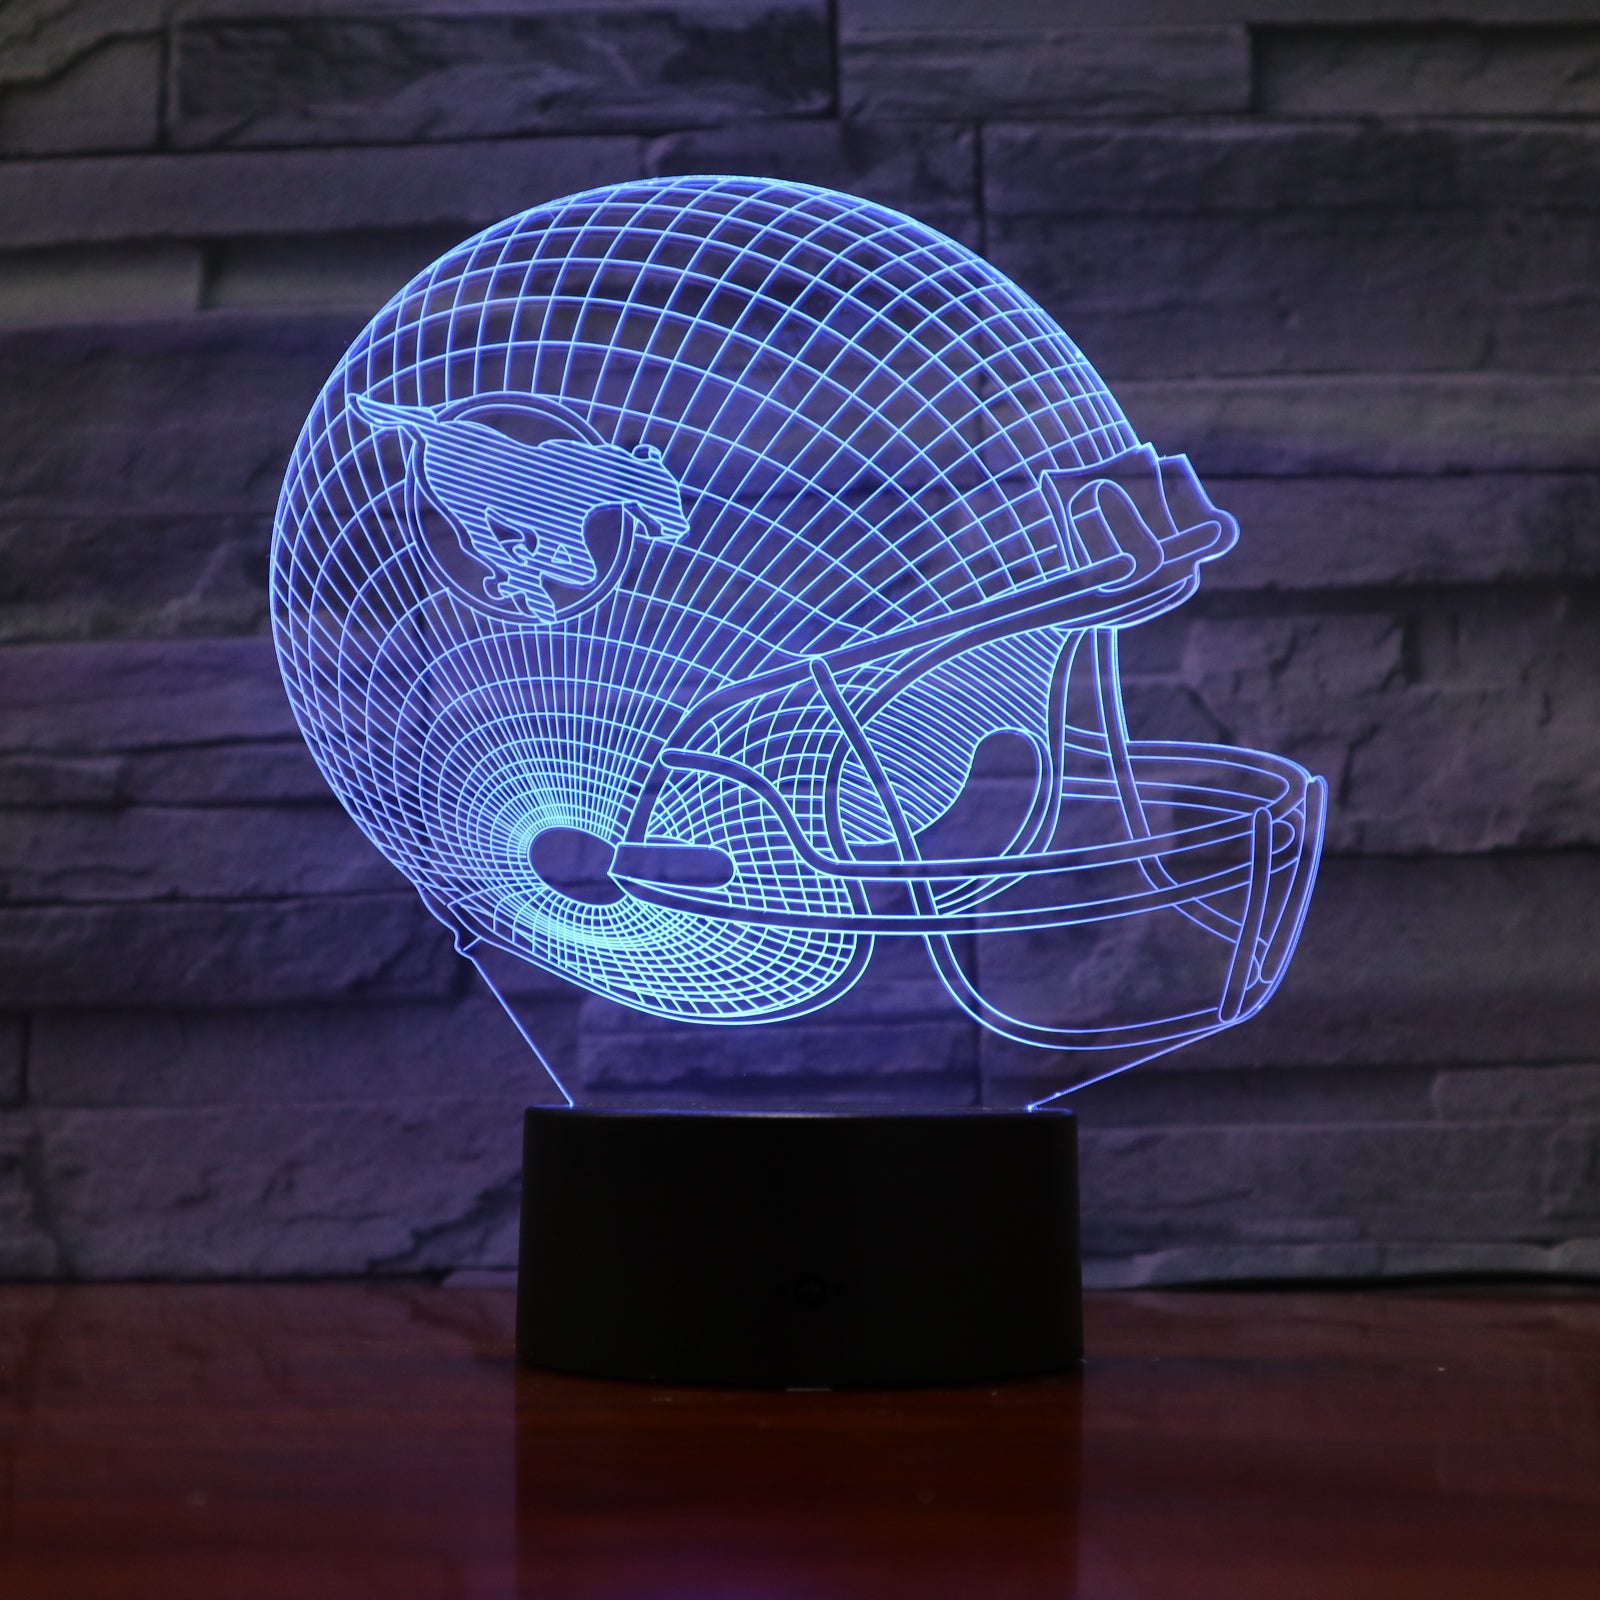 American Football Helmet 2 - 3D Optical Illusion LED Lamp Hologram